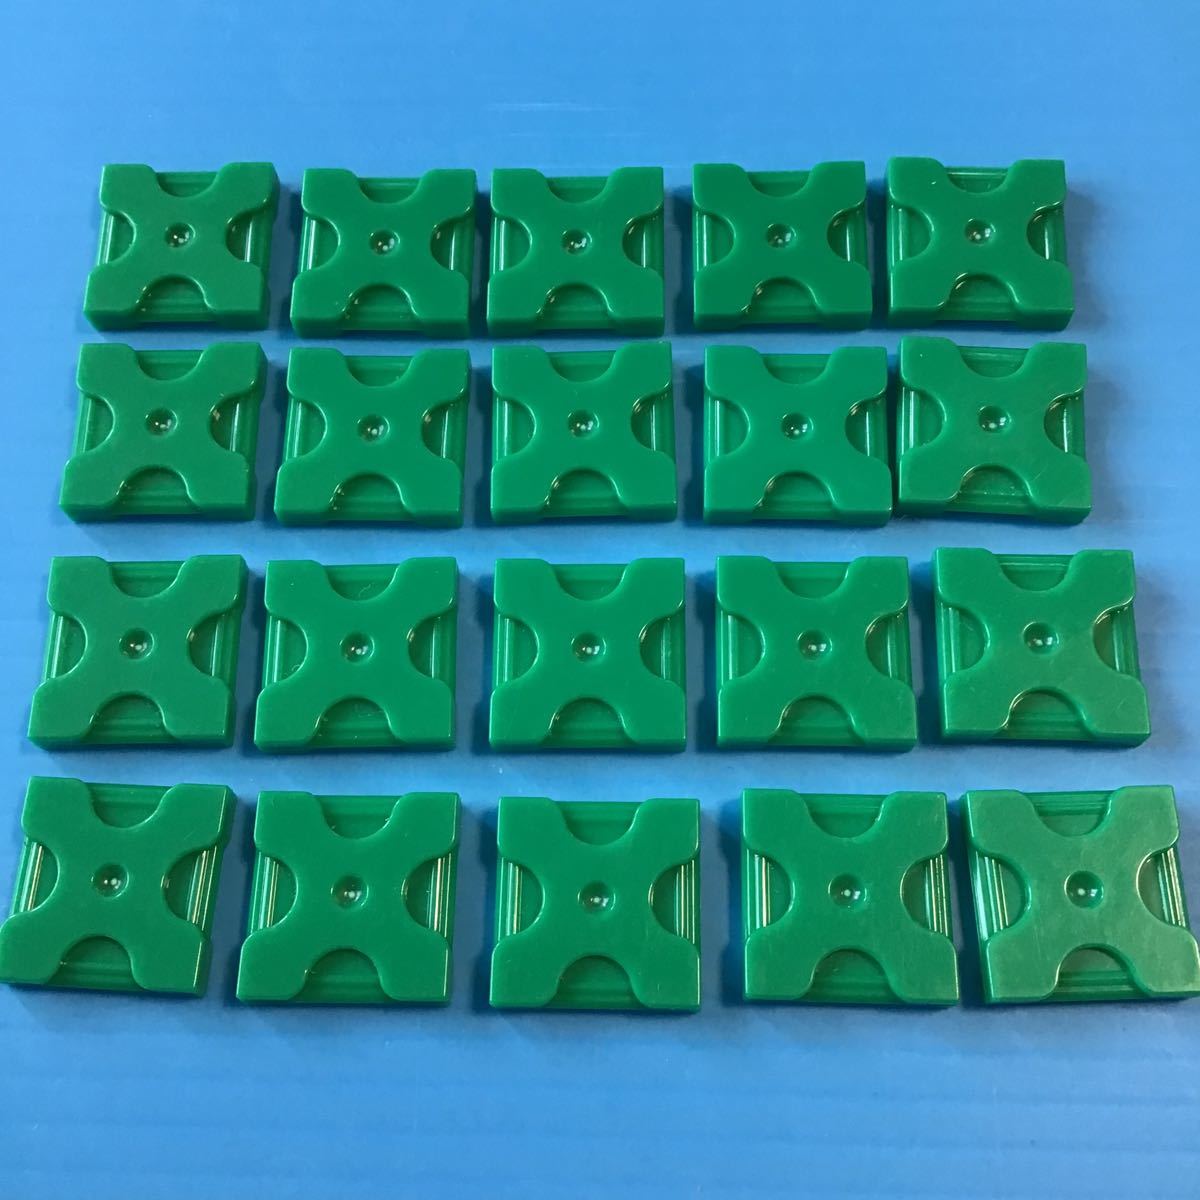 used 「 LaQ ラキュー 基本 パーツ 緑色 No.1 20個 」 / 四角形 / グリーン /20ピース/ パズルブロック 知育玩具おすすめ_画像1